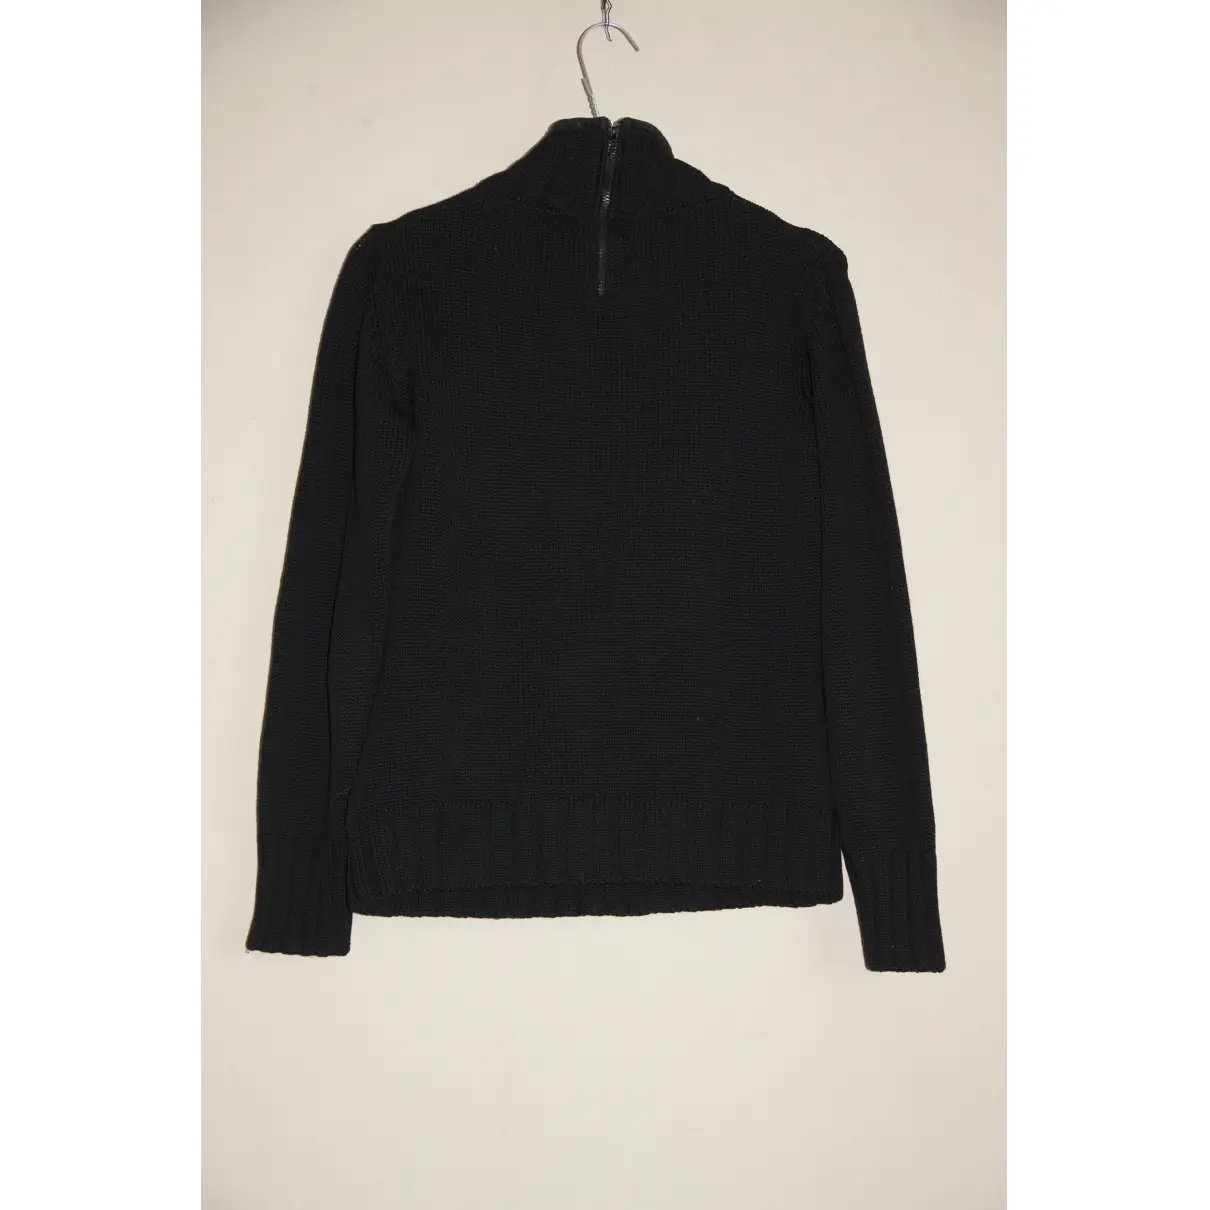 Buy Miu Miu Wool jumper online - Vintage